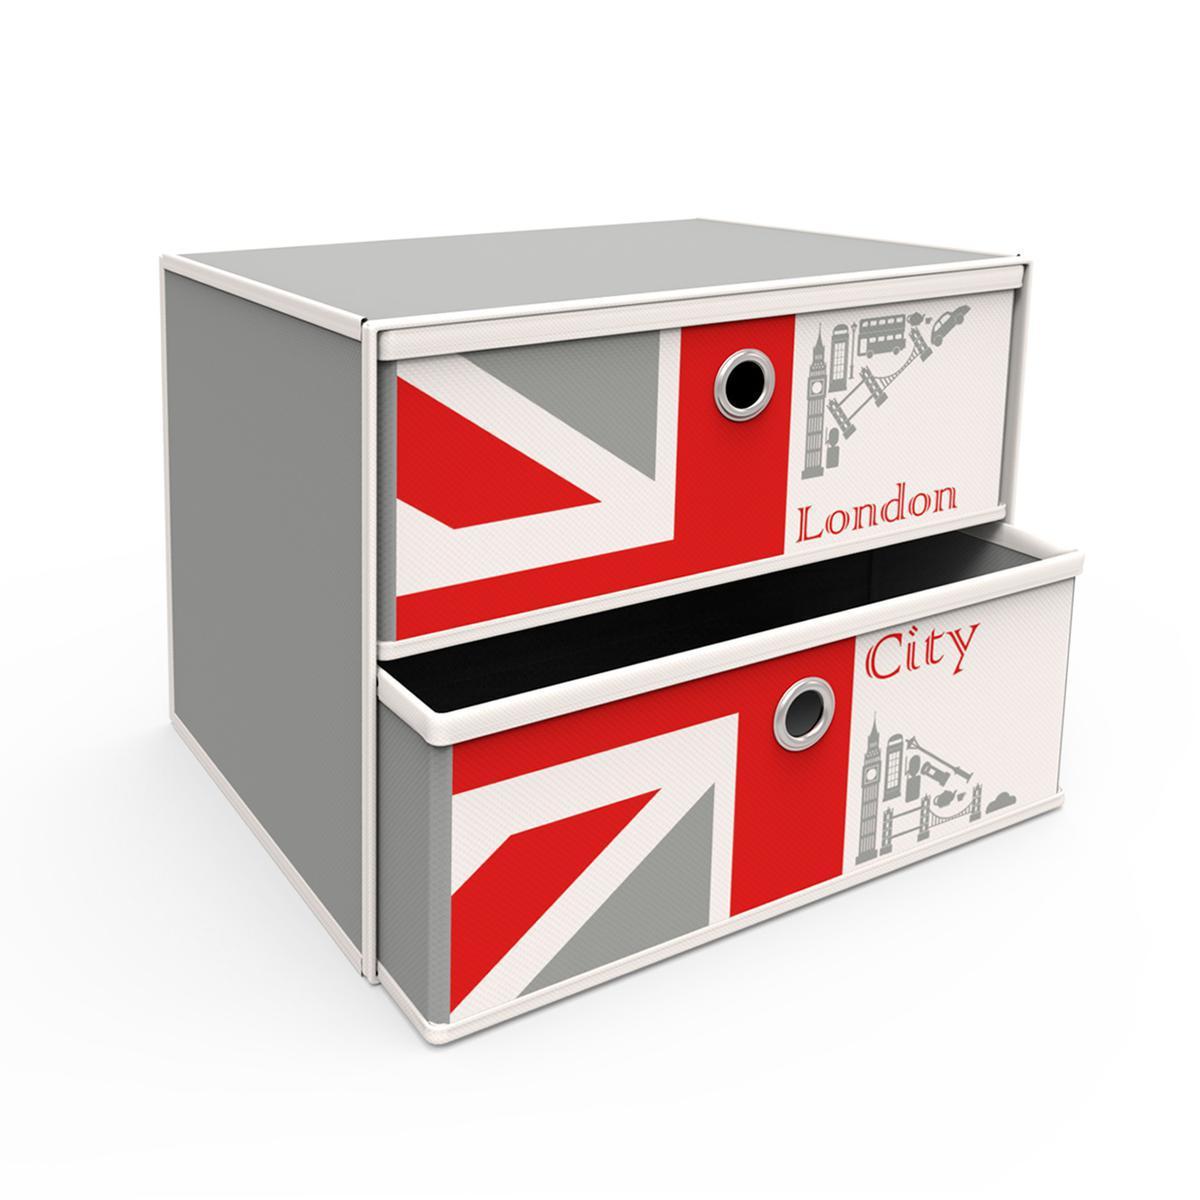 2 tiroirs drapeau UK - Tissu non tissé - 30 x 30 x H 27,5 cm - Gris, blanc et rouge